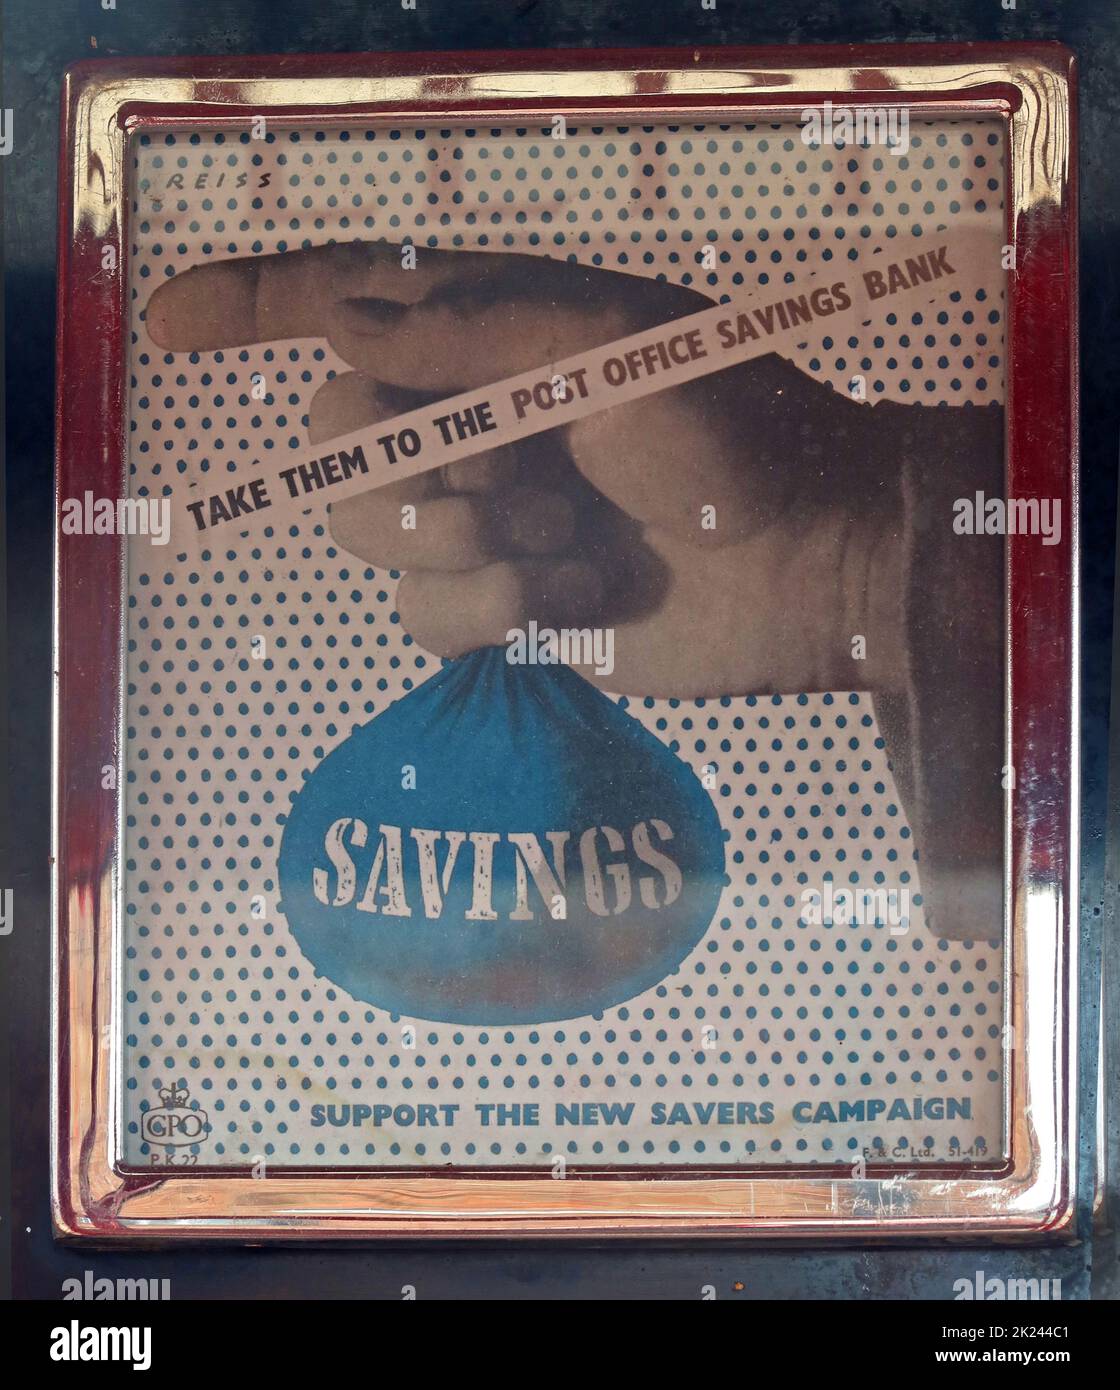 Économies - emmenez-les à la banque d'épargne de la poste, soutenir la nouvelle campagne des épargnants, faire de la publicité dans un kiosque de téléphone public Banque D'Images